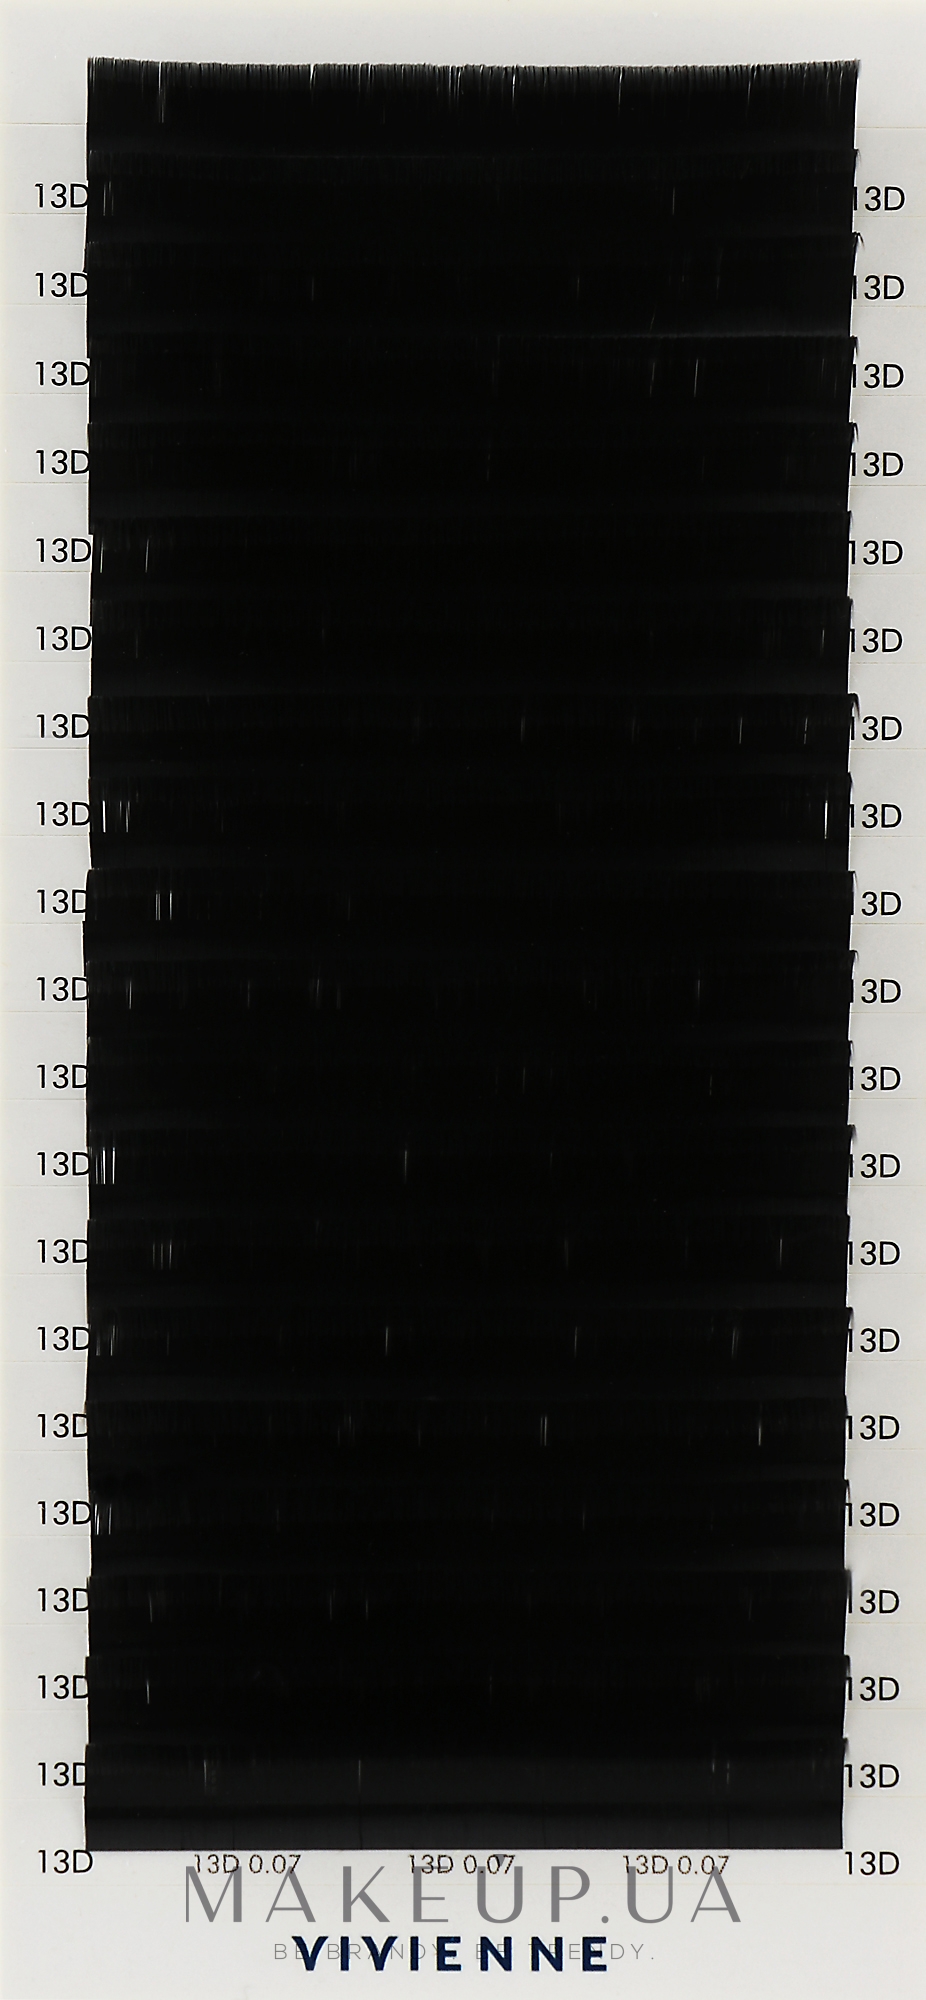 Накладные ресницы "Elite", черные, 20 линий (0,07, D, 13), эко упаковка - Vivienne — фото 1уп